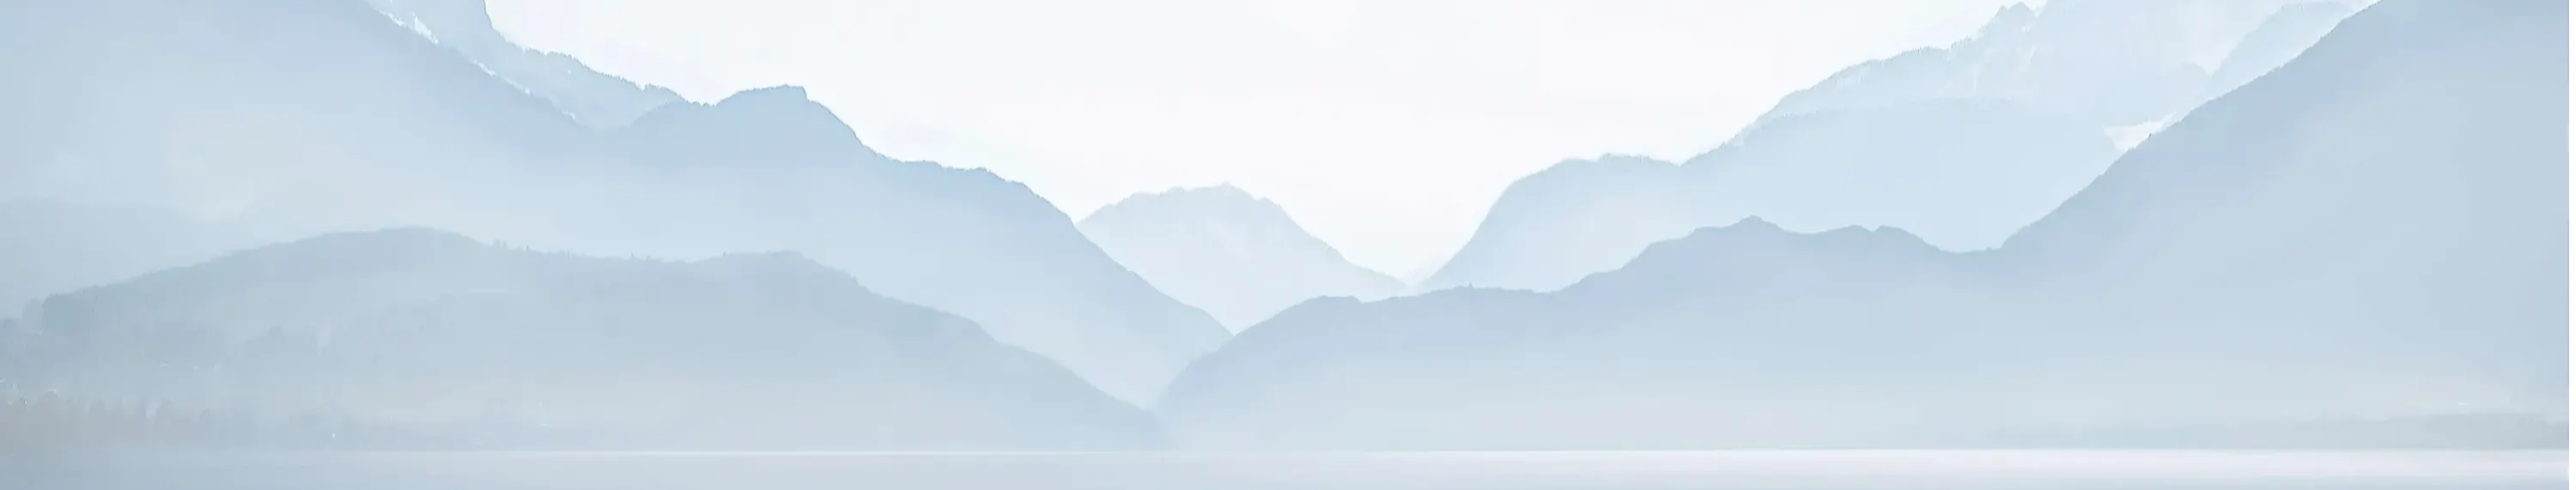 papier peint annecy professionnel lac montagne sur mesure francais